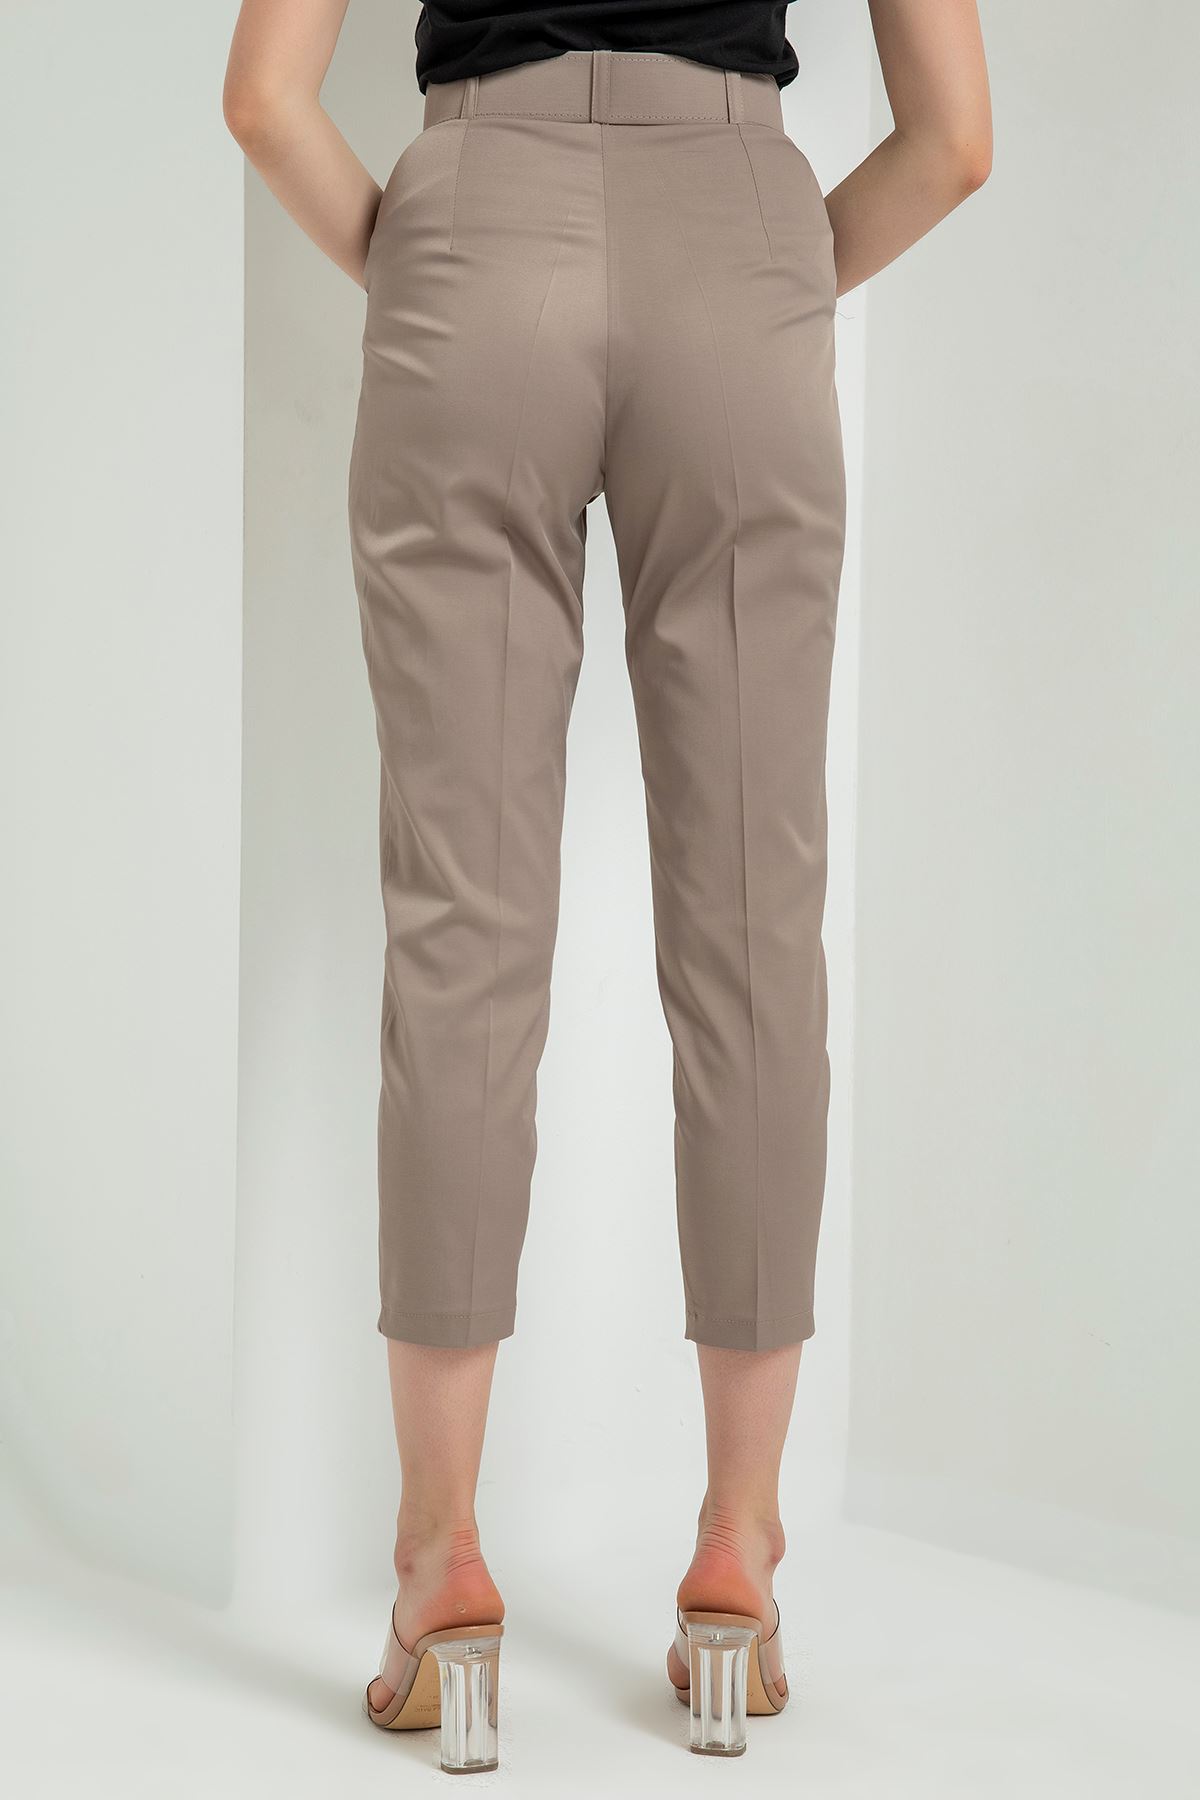 Atlas Fabric 3/4 Short Belted Women'S Trouser - Chanterelle 